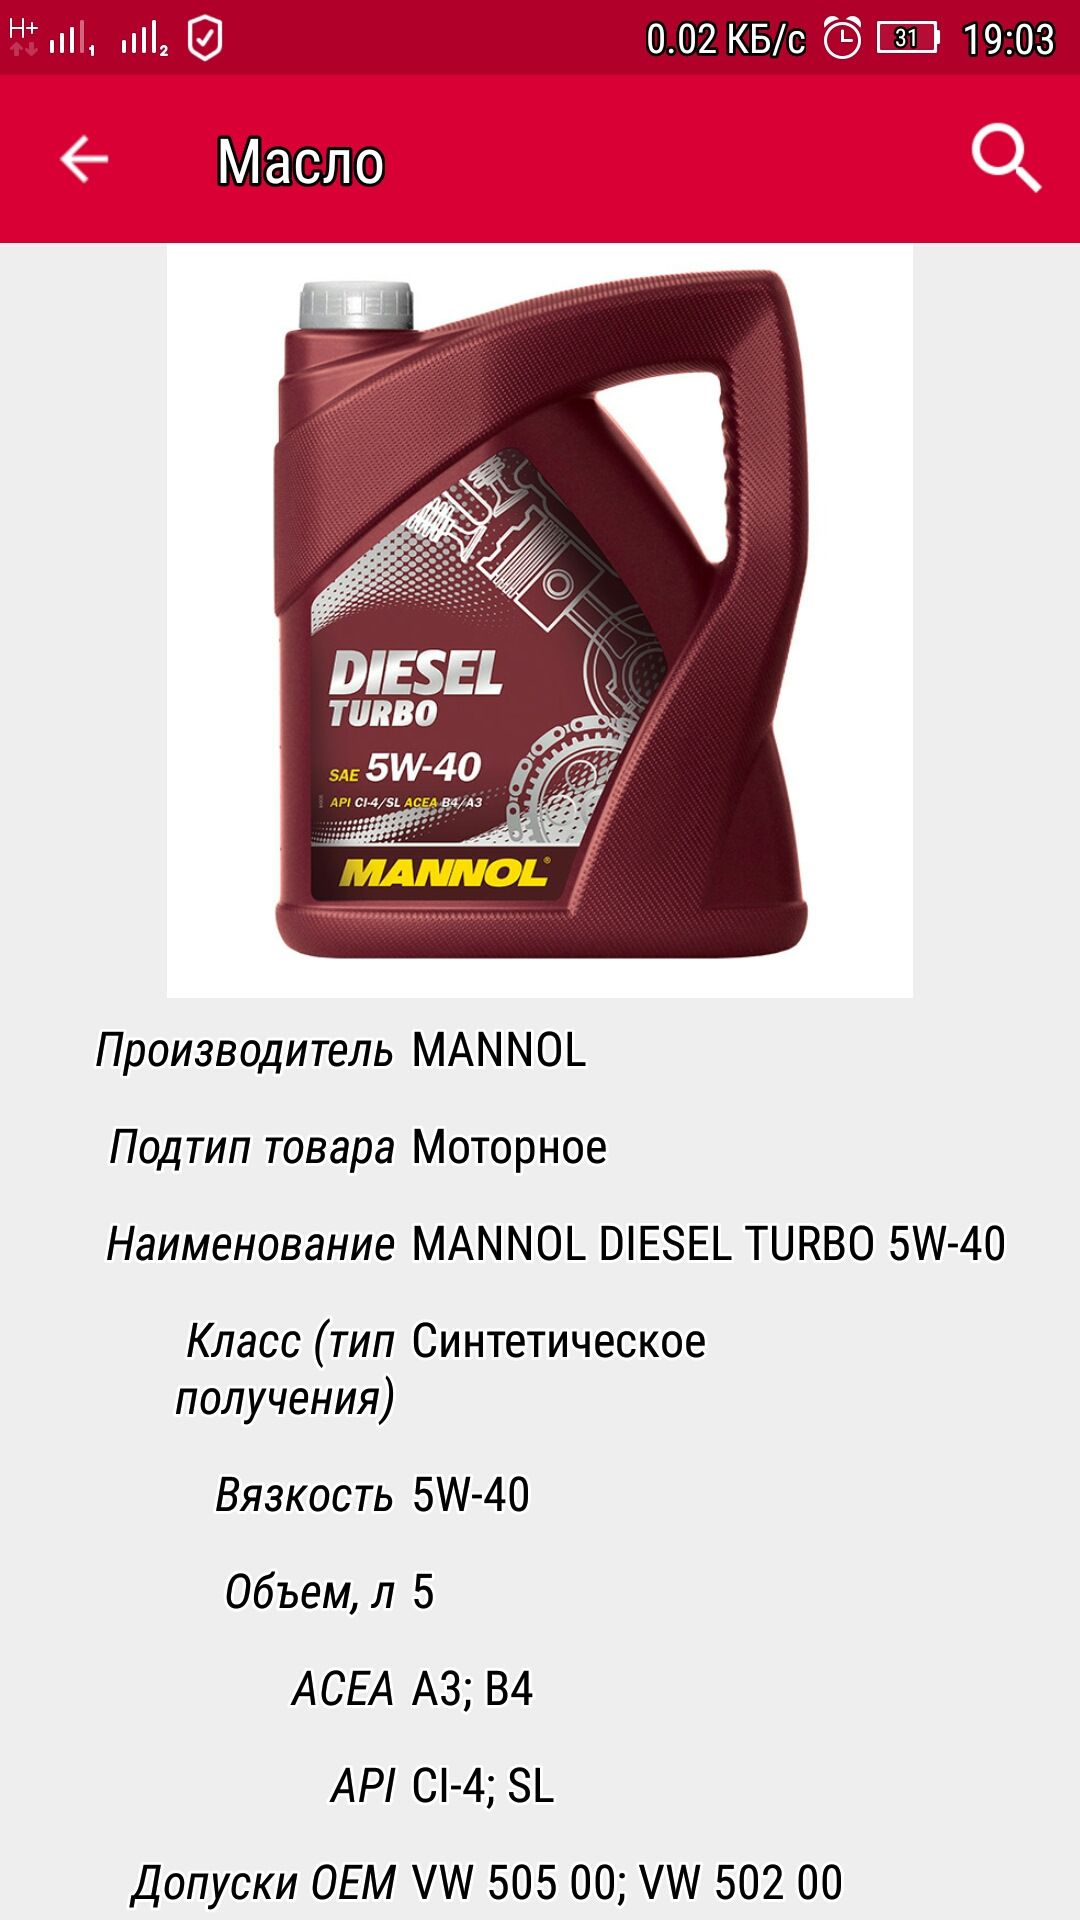 Название моторных масел. Немецкое масло моторное названия. Название дизельных масел. Кто производит масло Mannol.